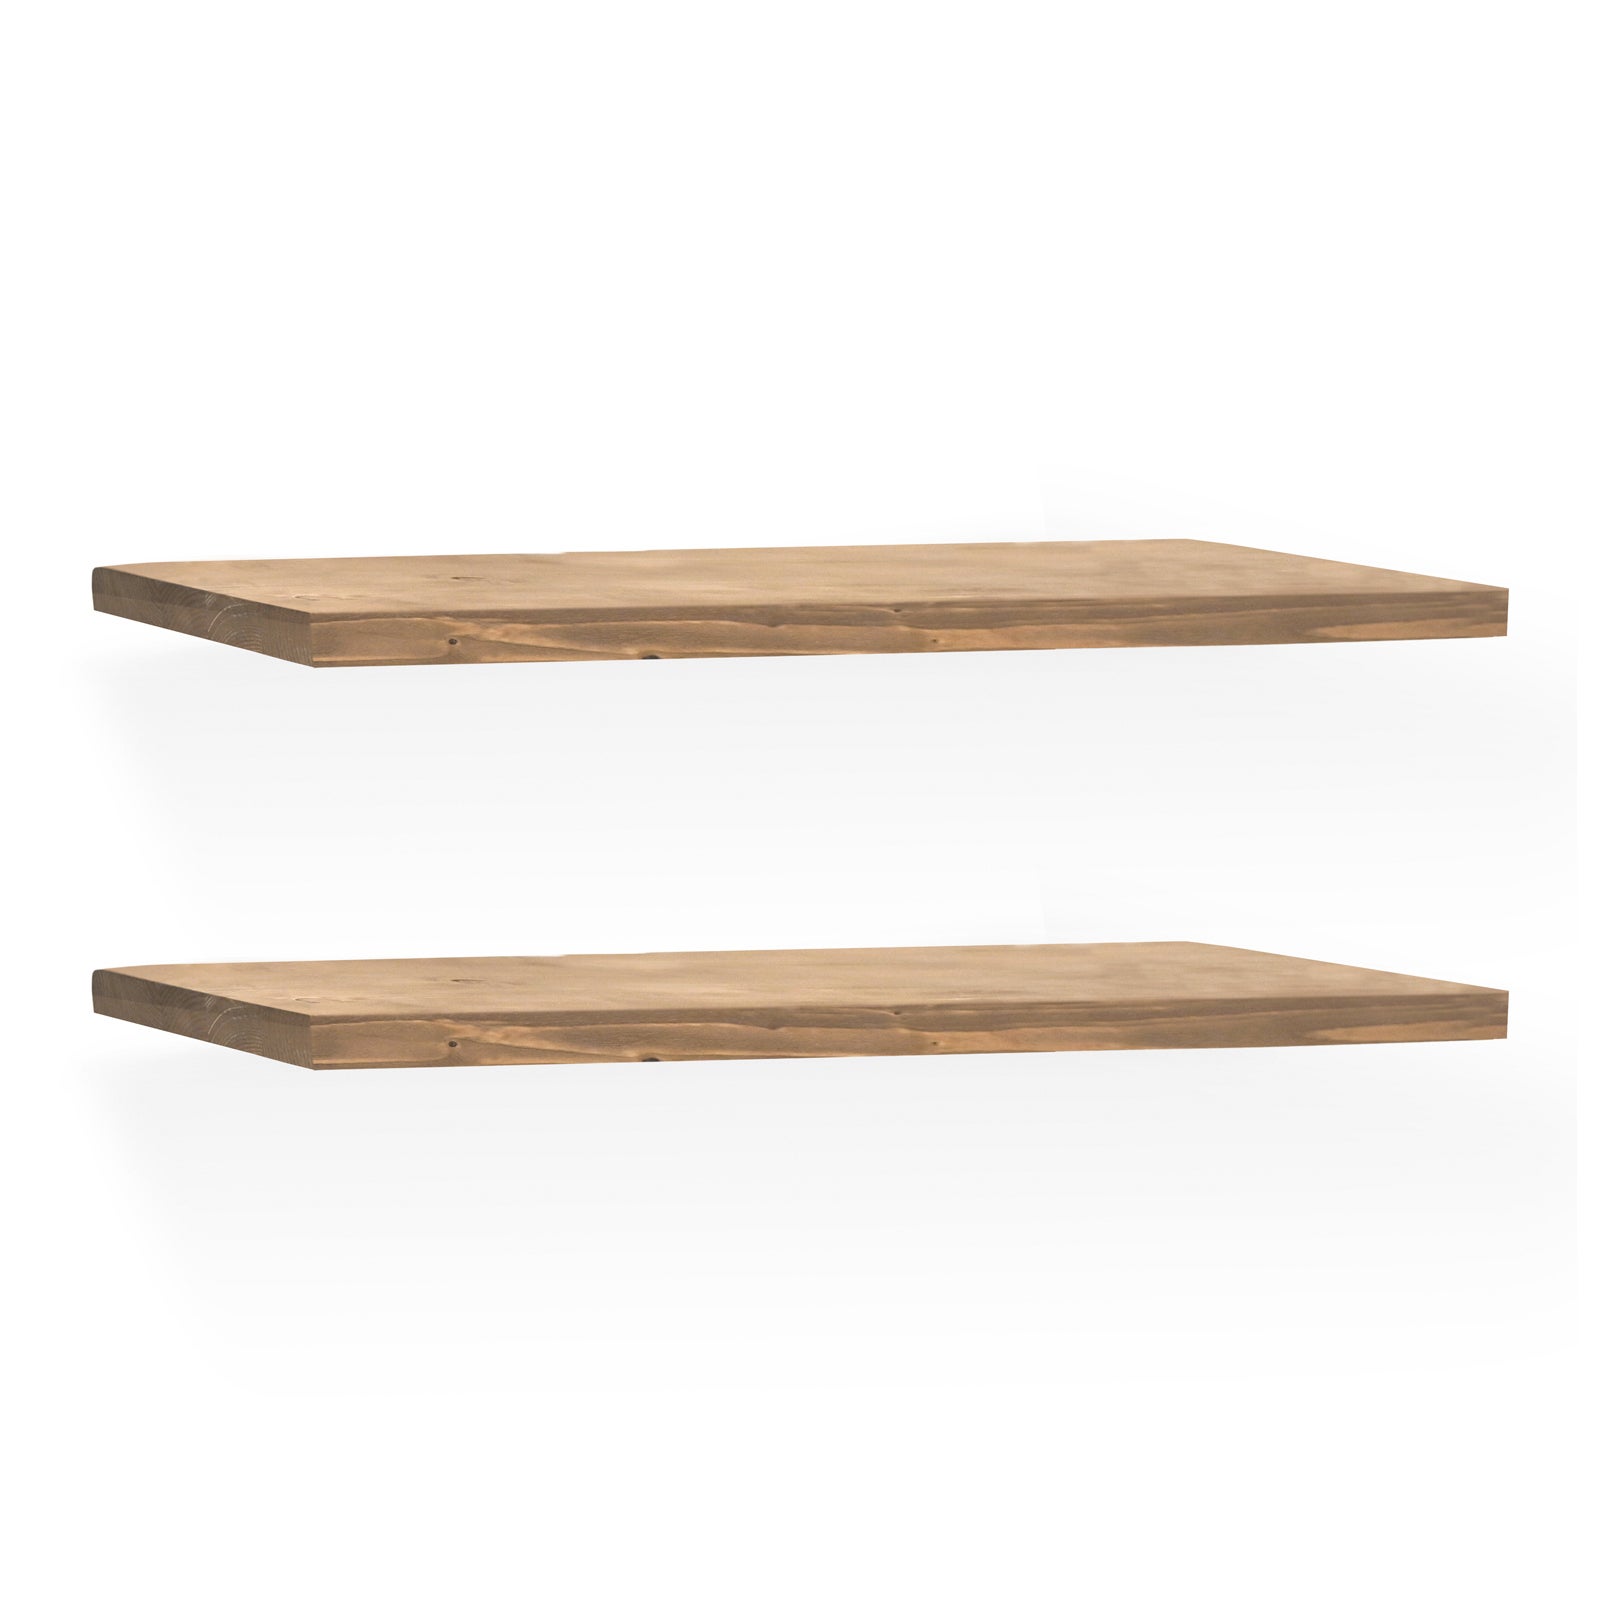 Escalera de madera maciza en tono natural de 150x41cm